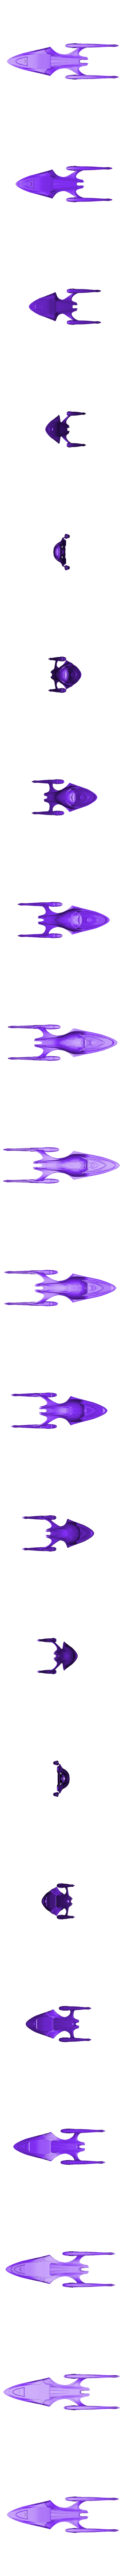 Enterprise_F_Body.stl Télécharger fichier STL gratuit Star Trek Odyssey-Class Enterprise-F • Plan à imprimer en 3D, Solid_Alexei